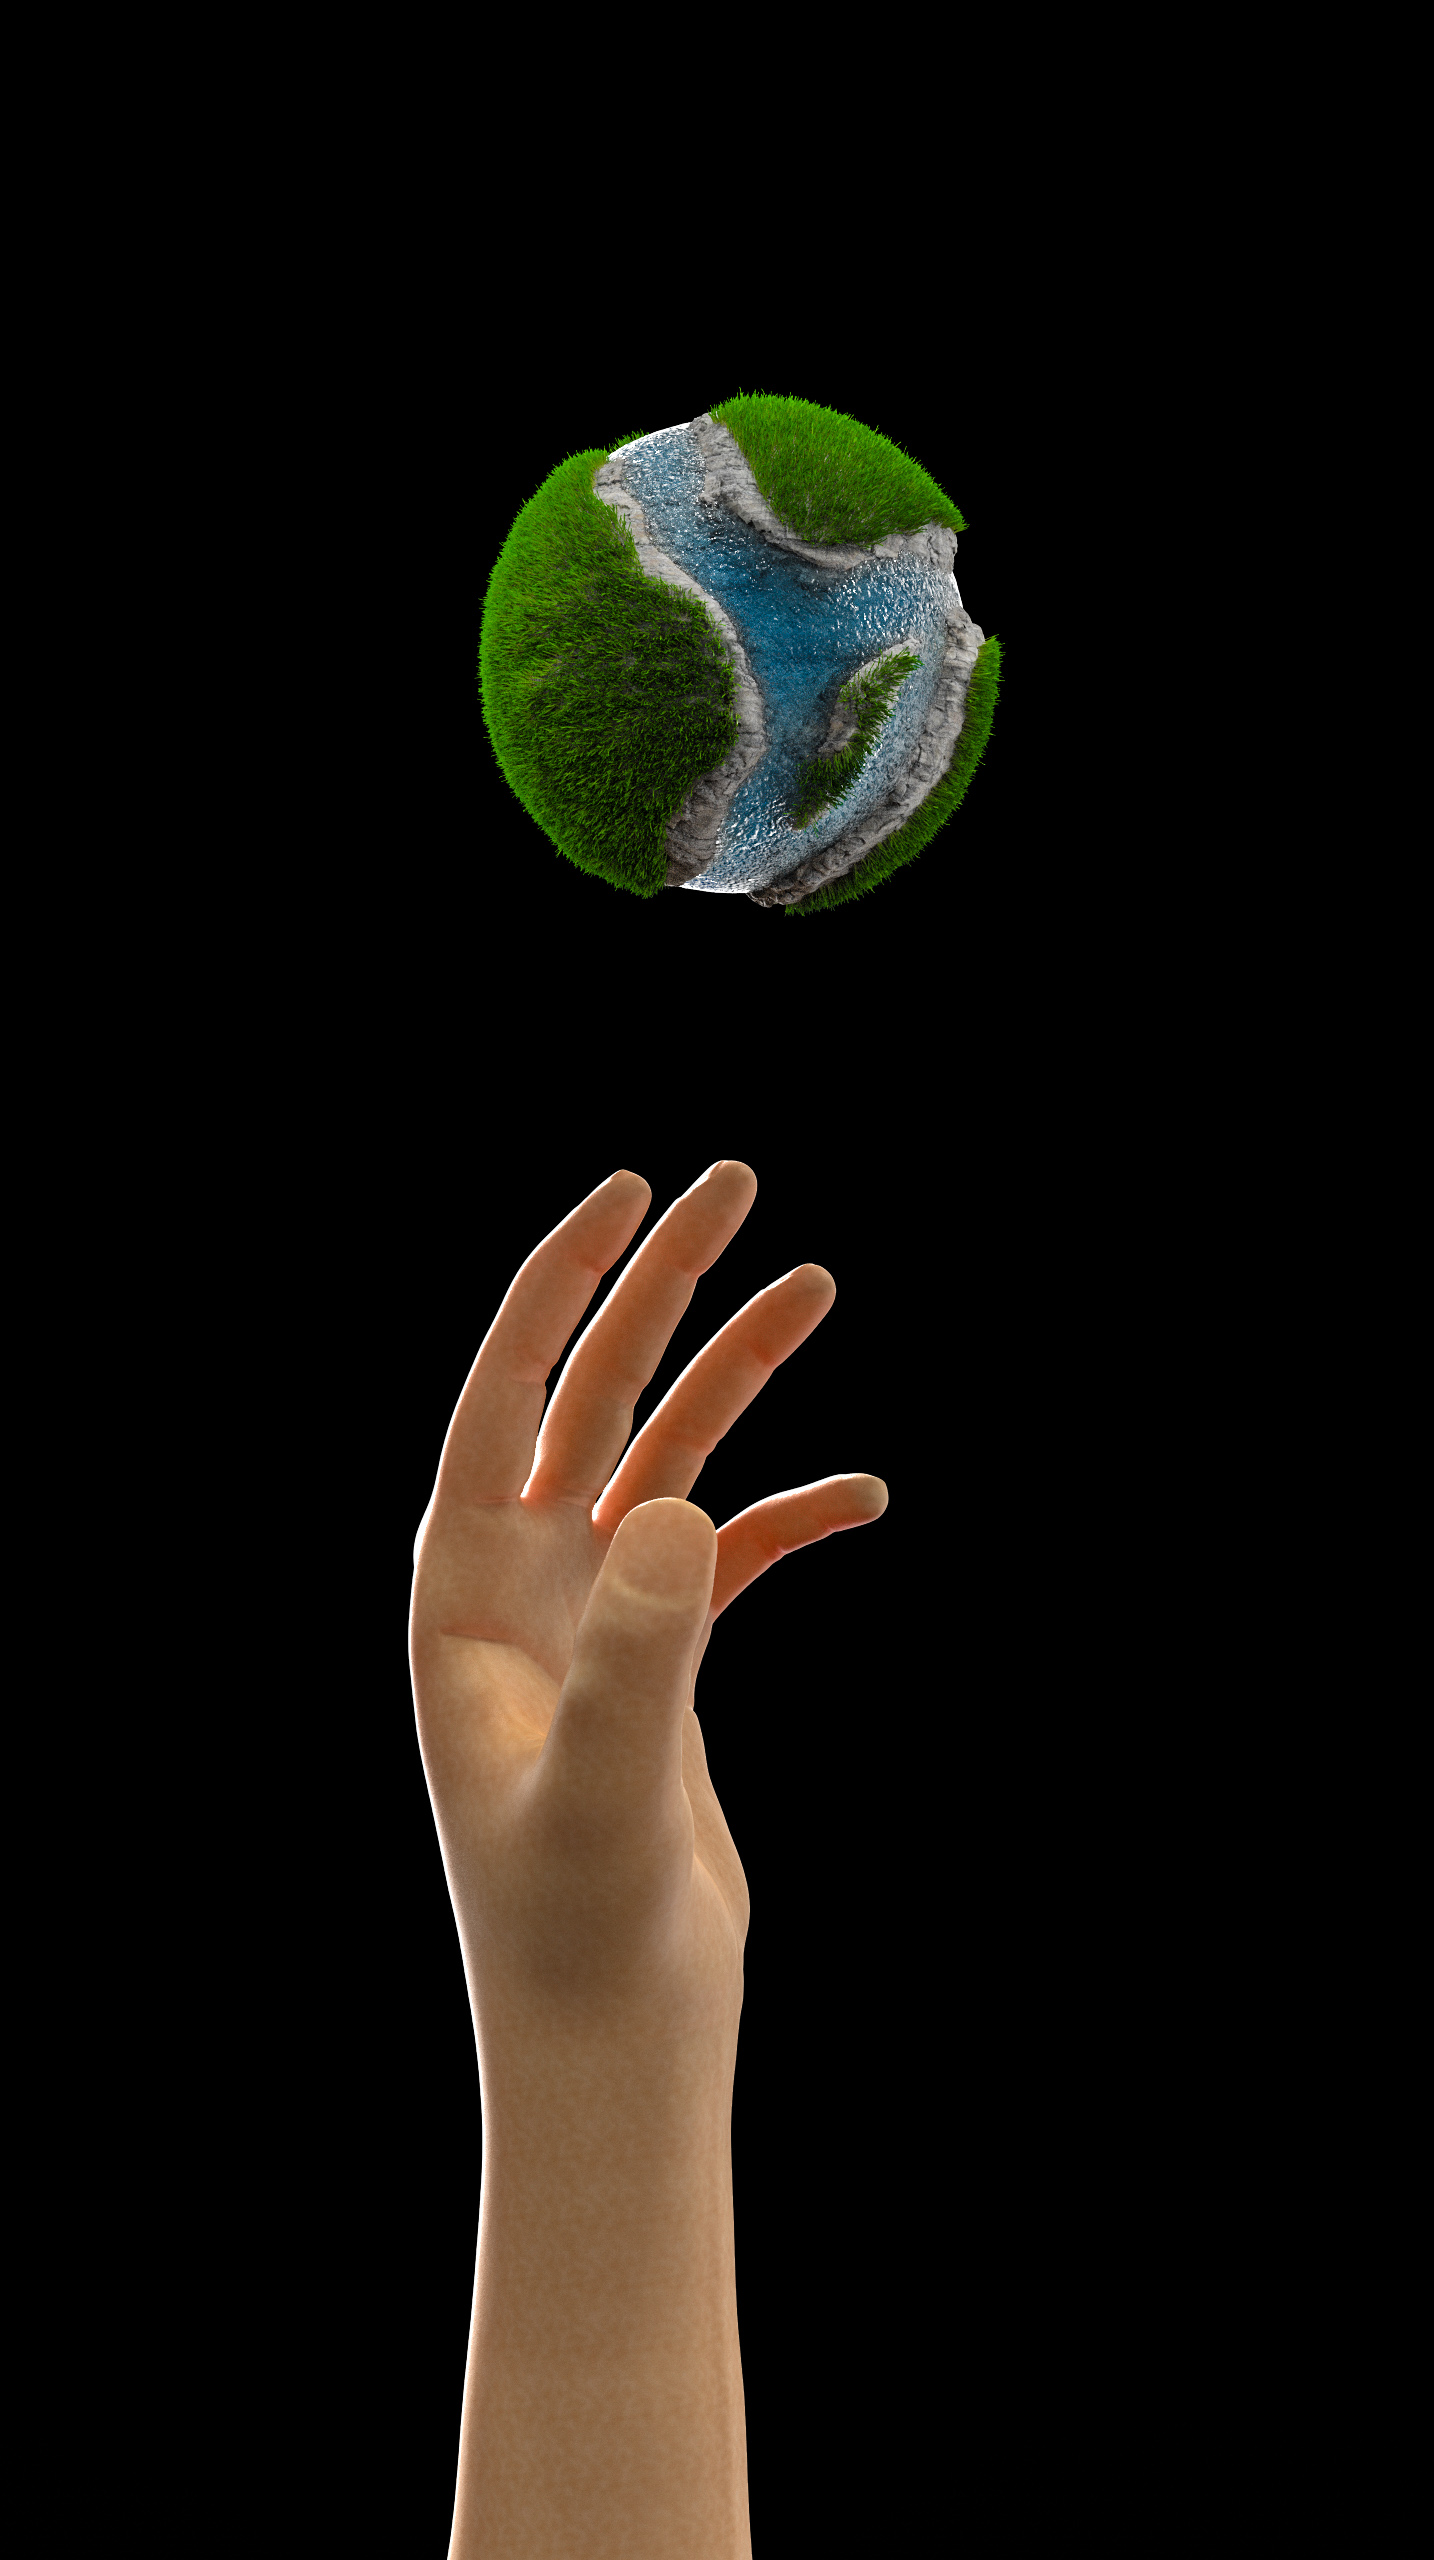 General 1434x2560 hand gesture globes CGI digital art 3D sculpture grass ocean view dark background minimalism simple background skin